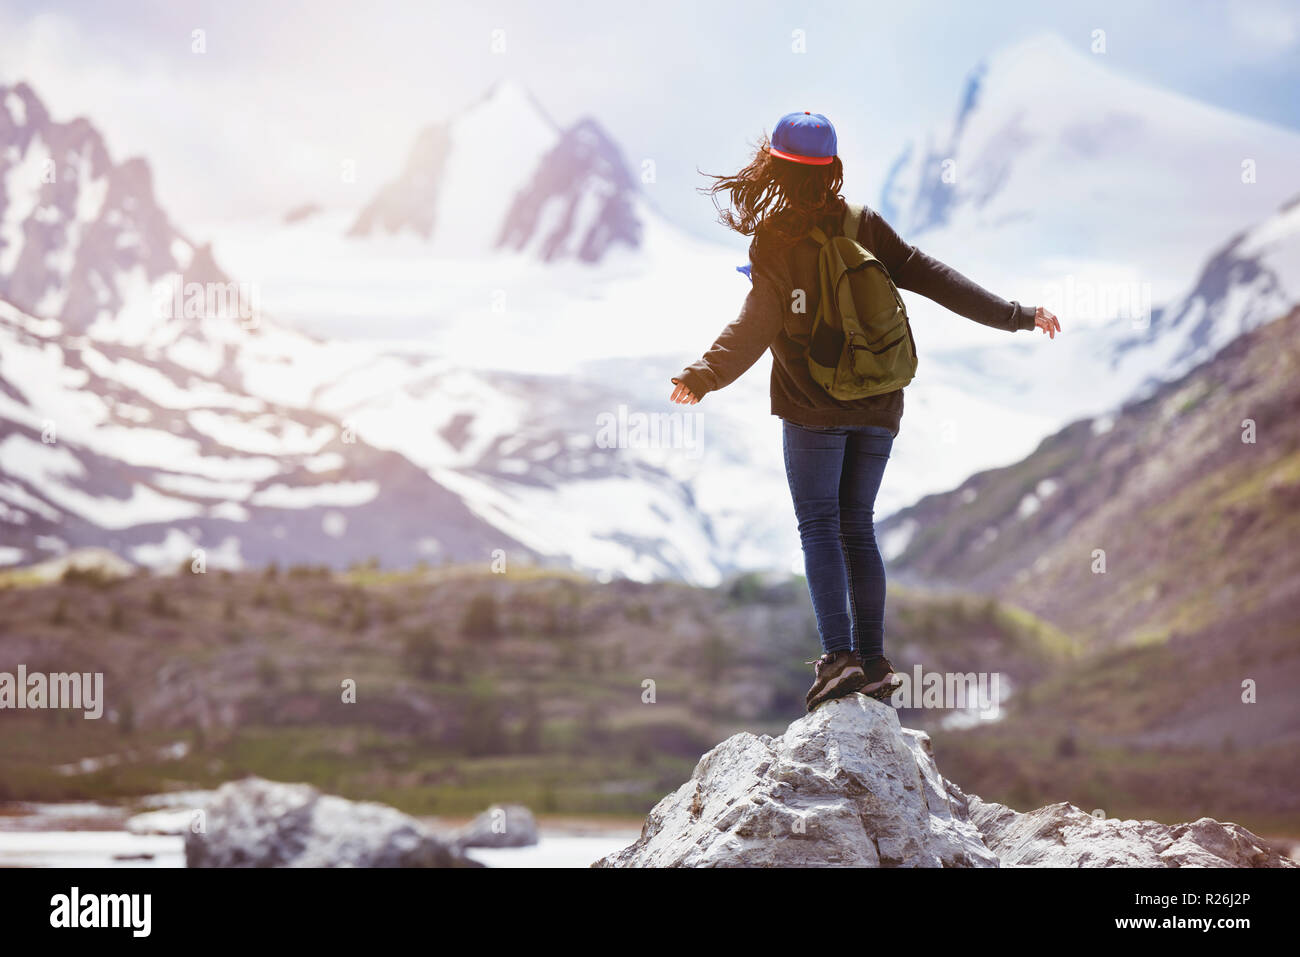 Jeune fille se tient sur le gros rocher et ressemble à une montagne. Billet, backpacker ou concept du tourisme Banque D'Images